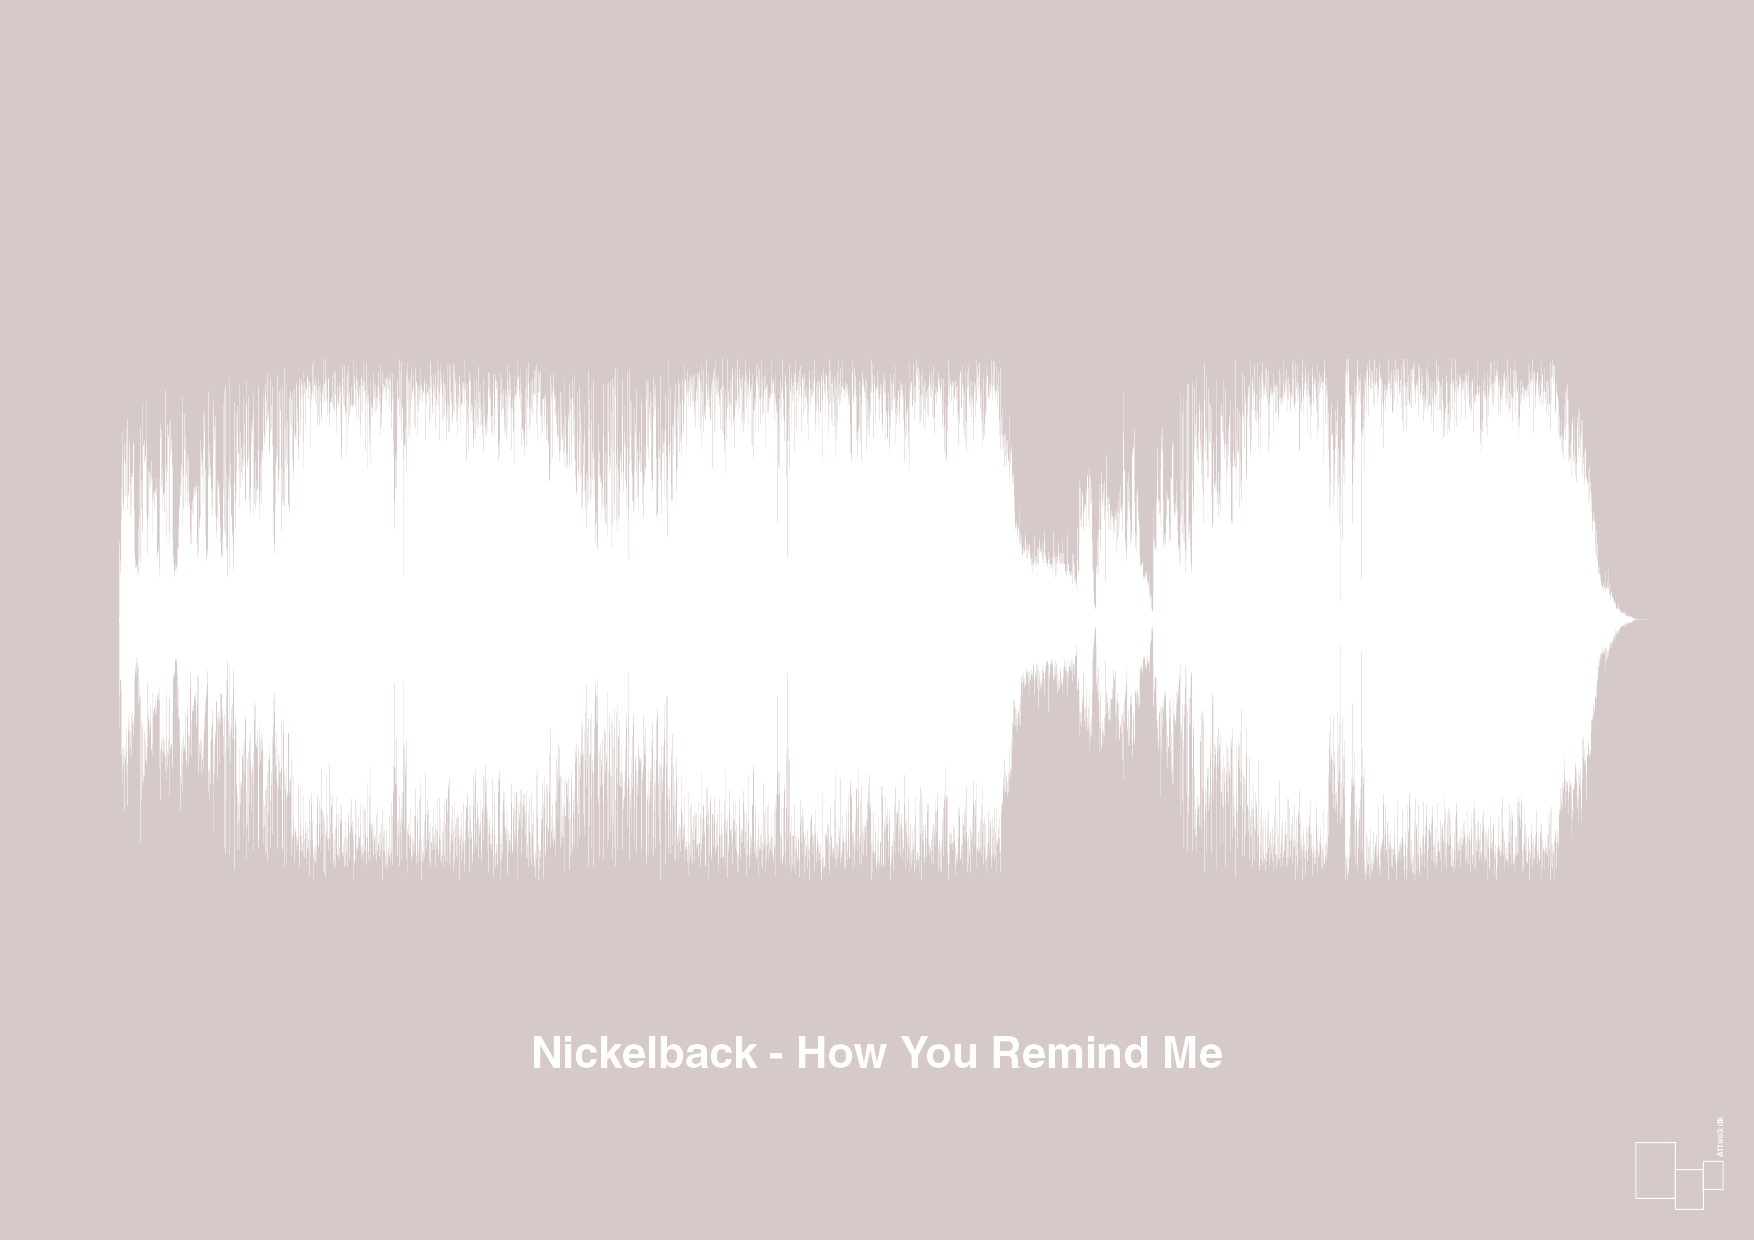 nickelback - how you remind me - Plakat med Musik i Broken Beige